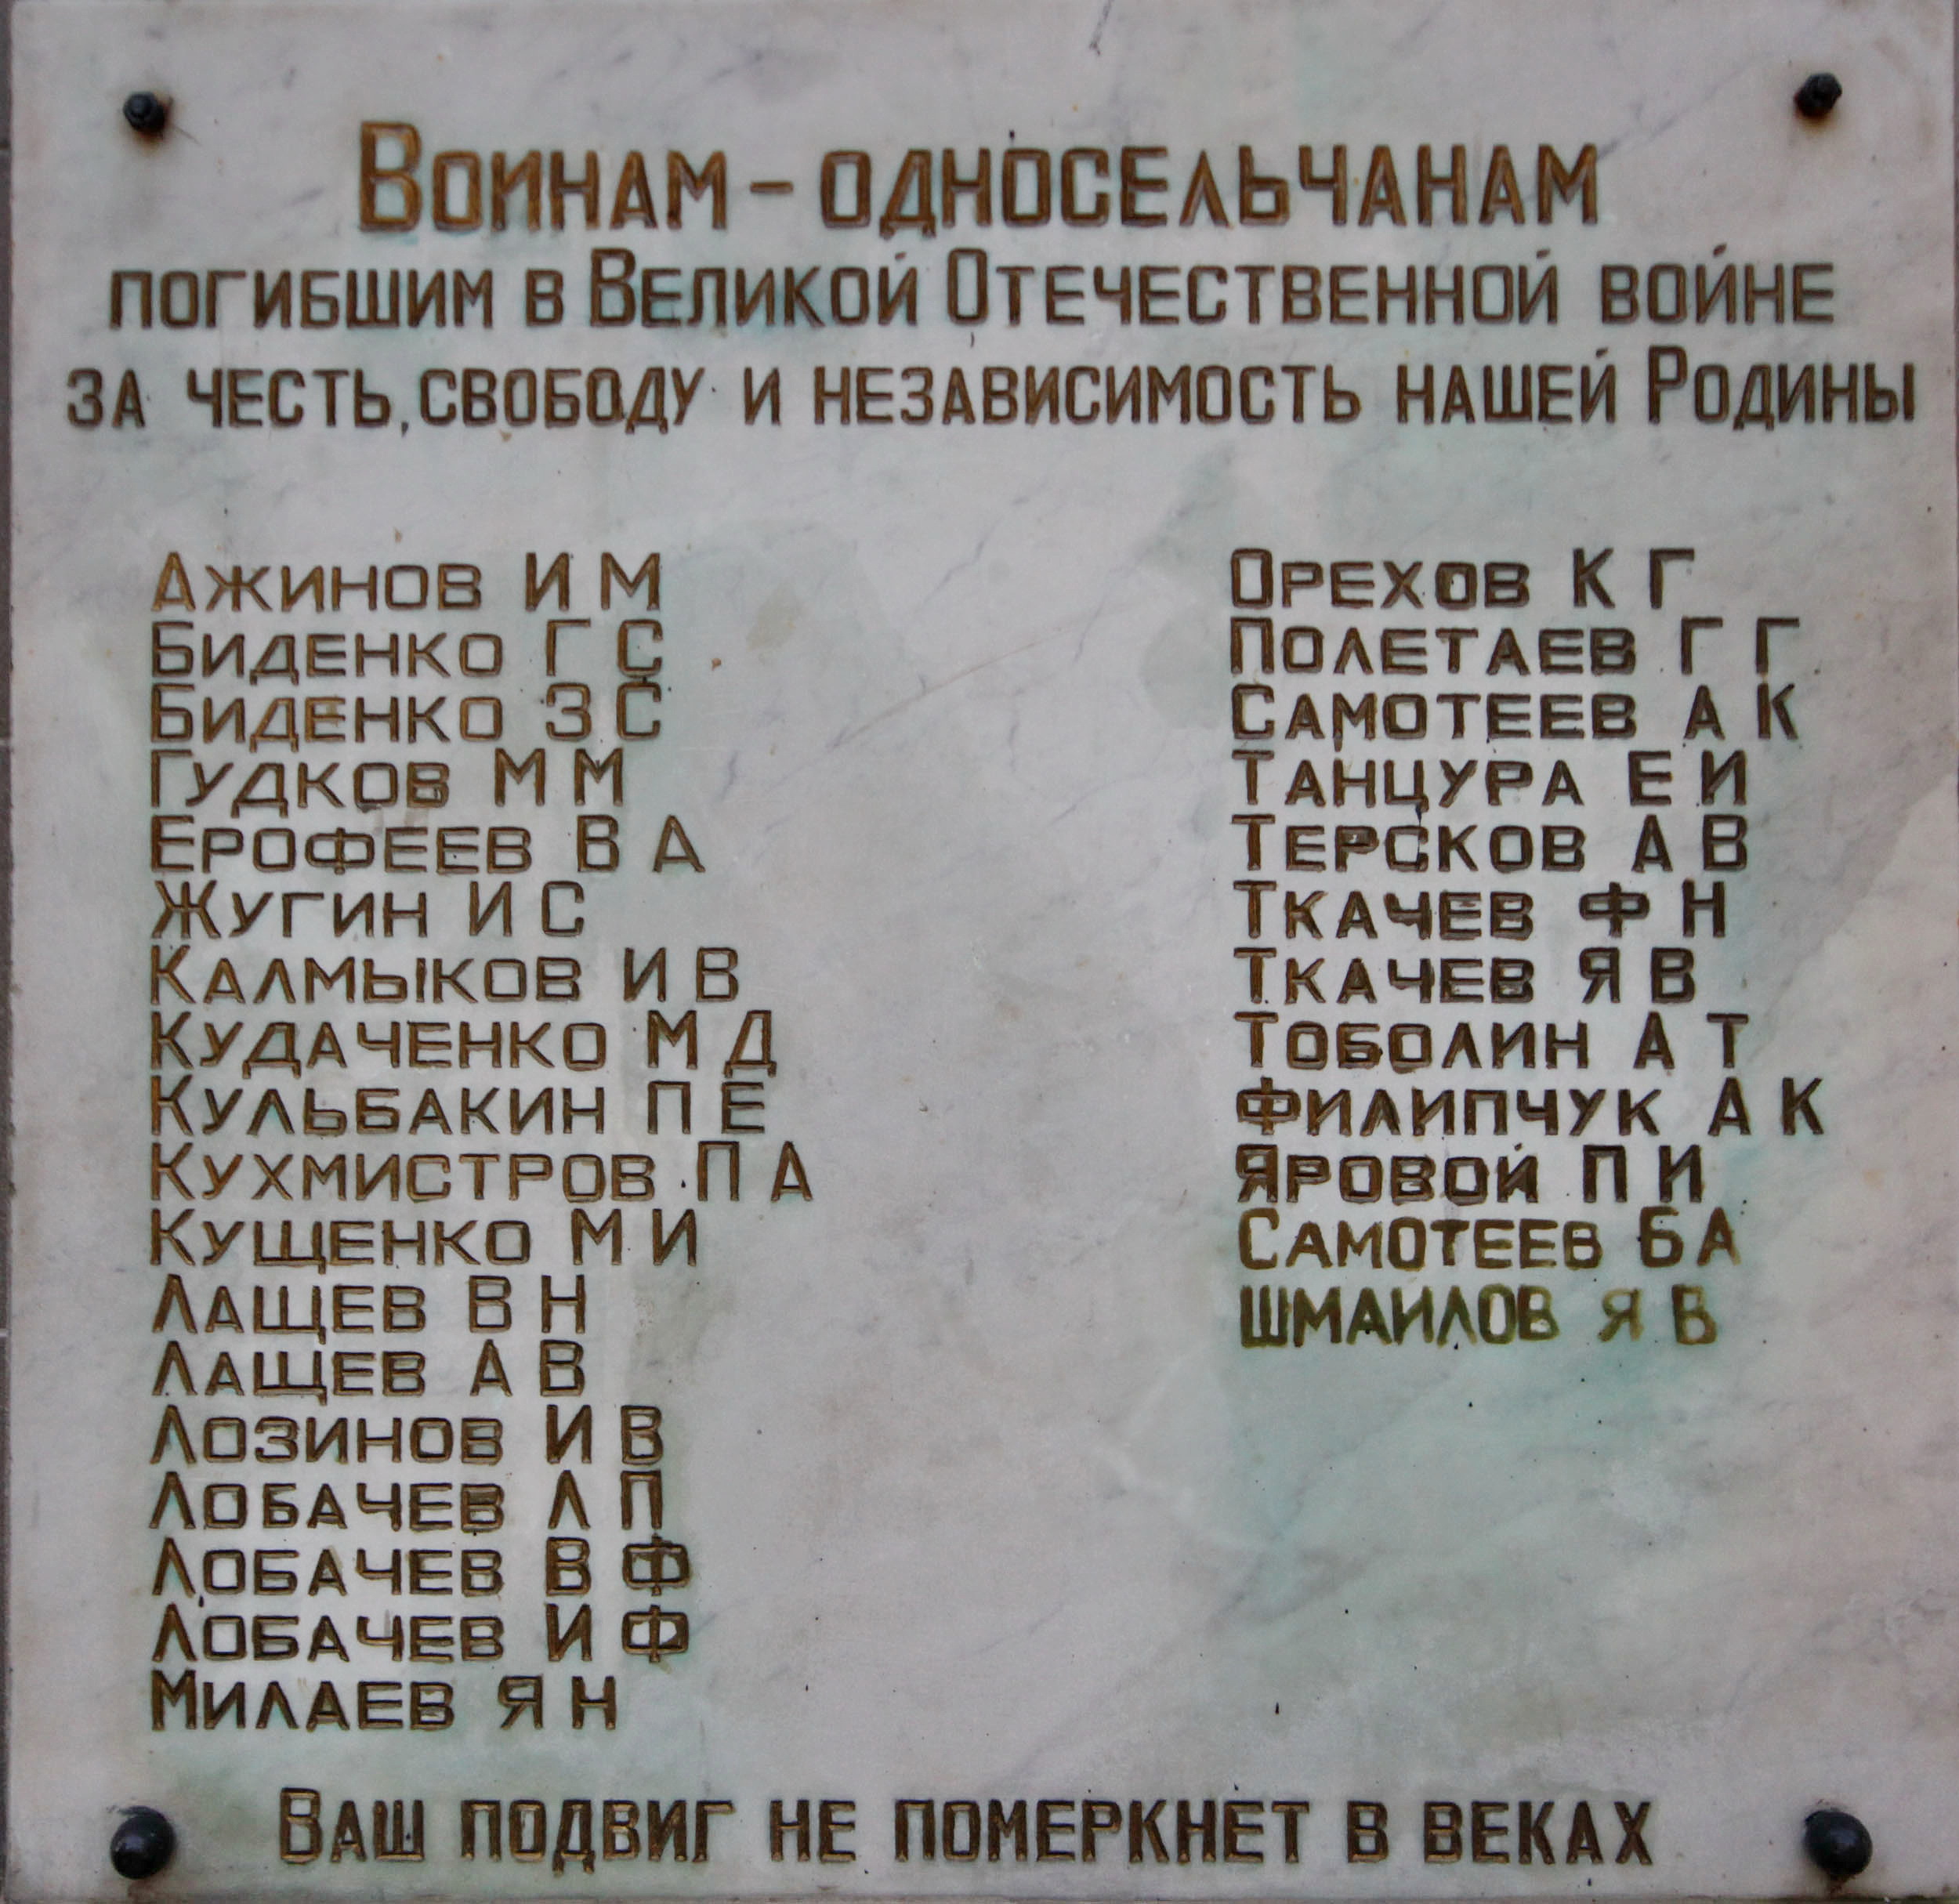 Список погибших в великой отечественной